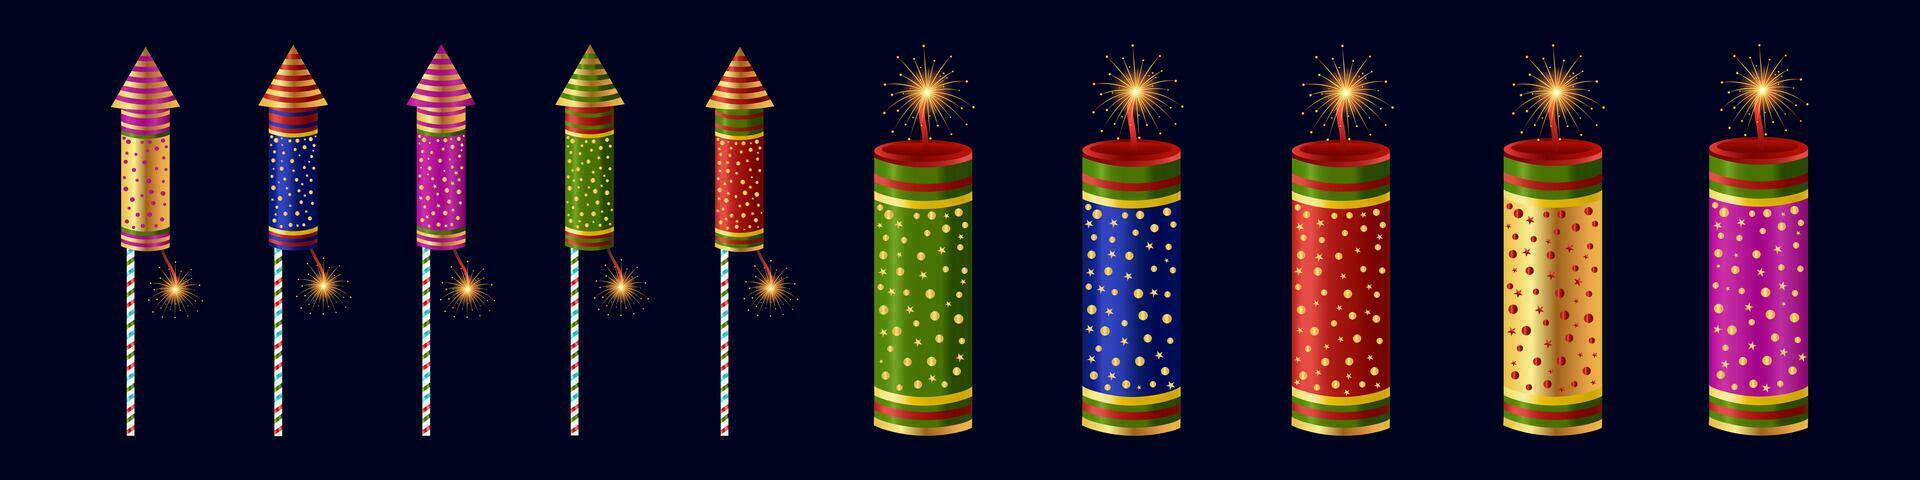 contento diwali festival elemento diya lámpara galletas cielo linterna fans fuegos artificiales bhia dooj vector